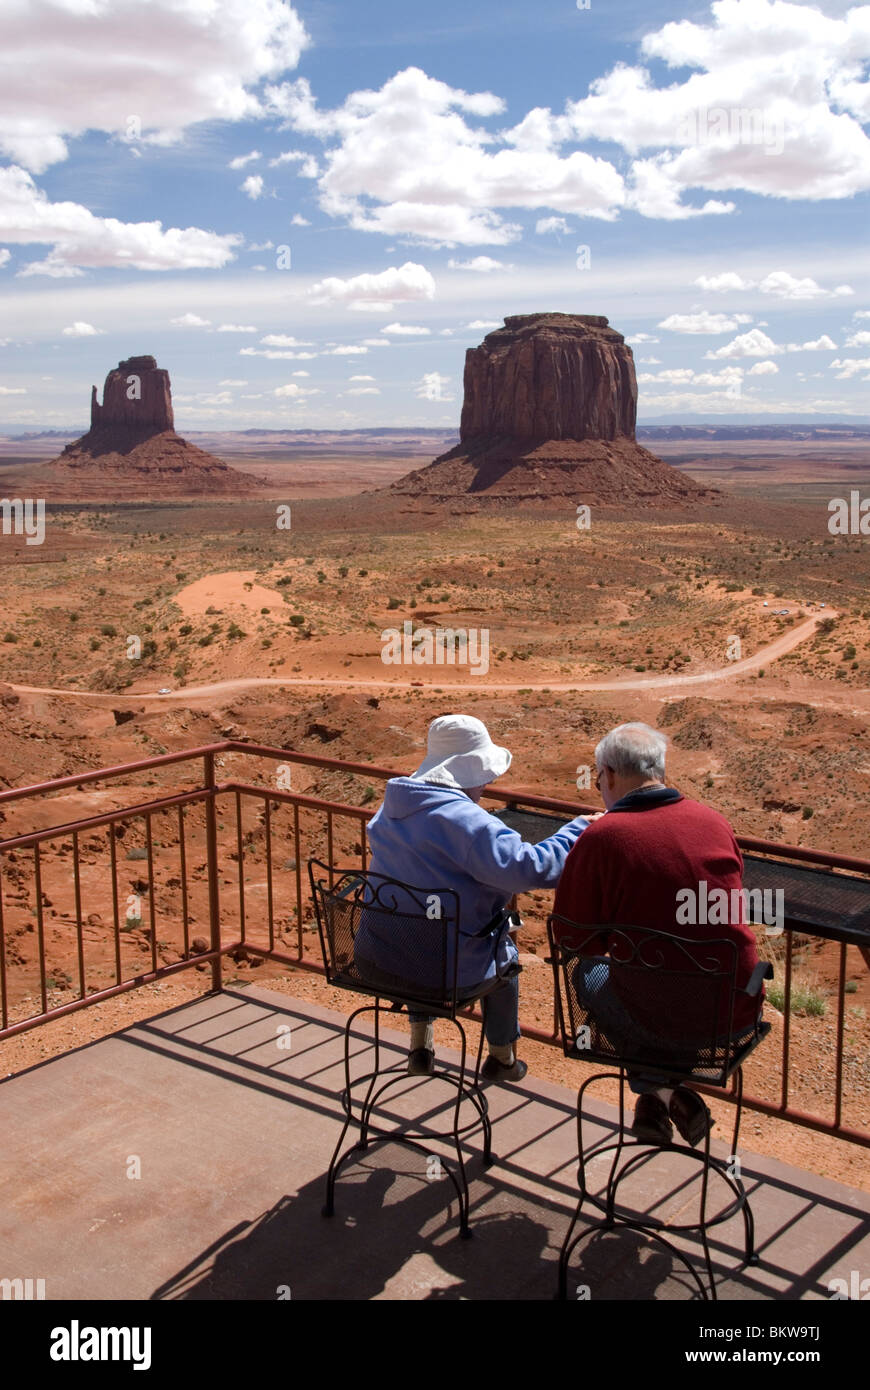 Touristen auf den Navajo Tribal Park Besucher Center Monument Valley Utah USA Nordamerika Mesas und buttes Stockfoto